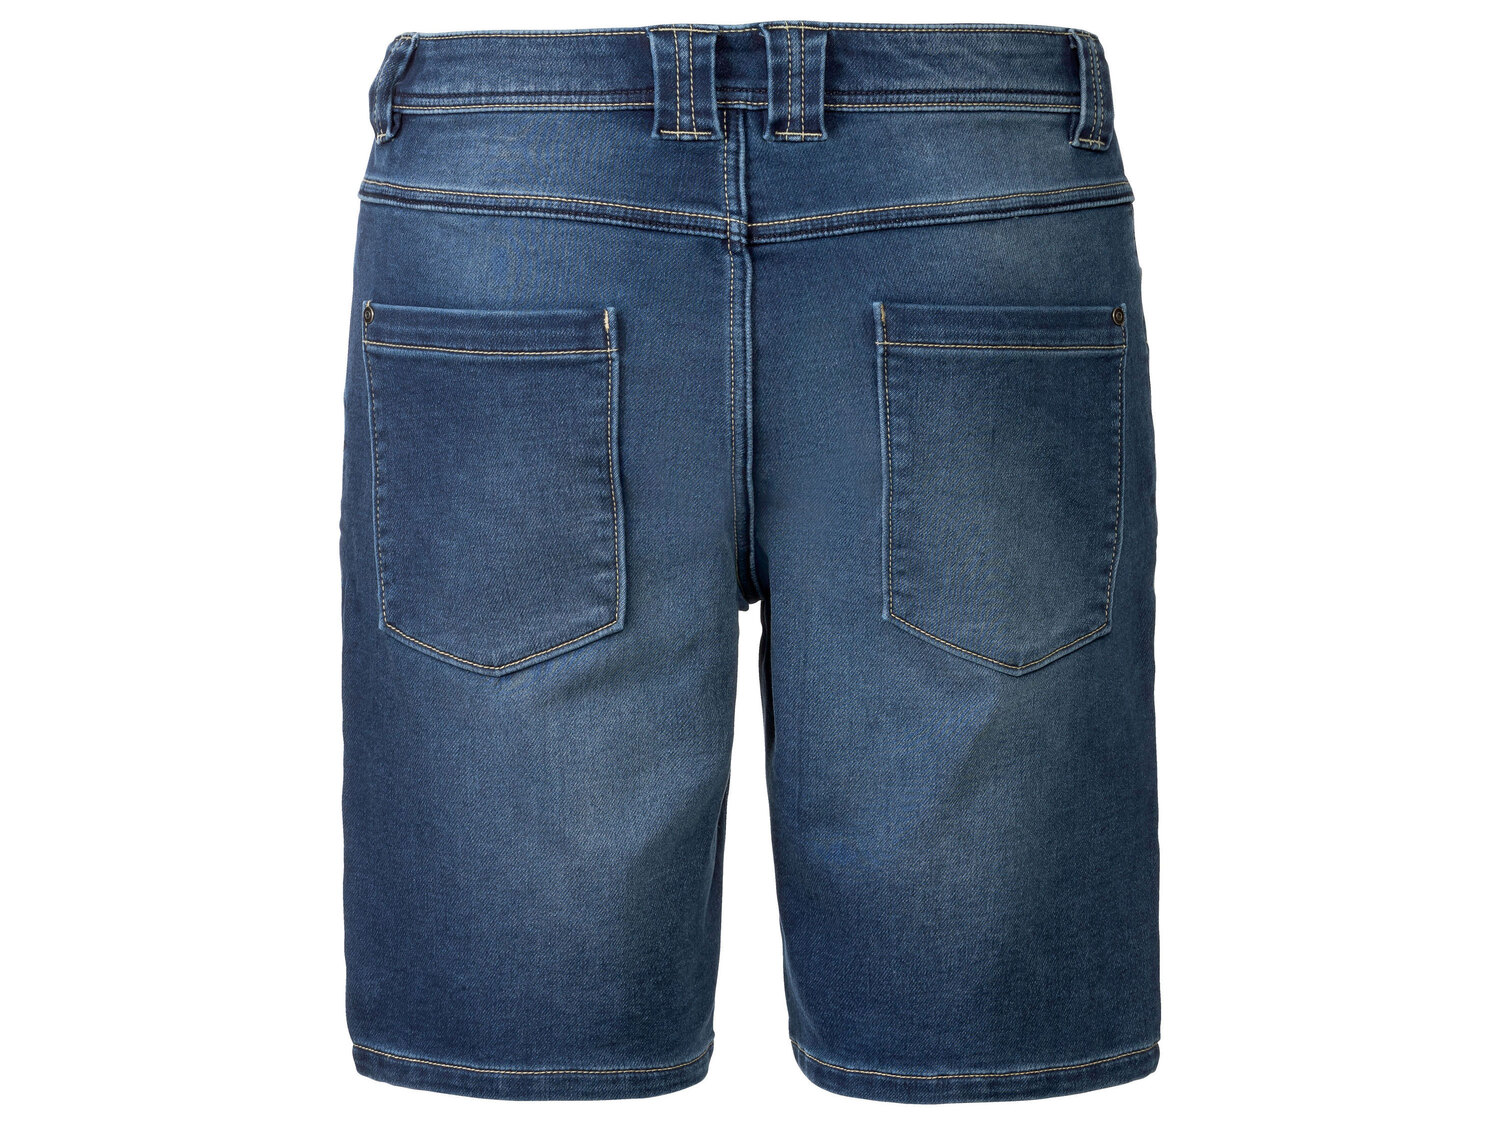 Szorty jeansowe męskie , cena 39,99 PLN 
- rozmiary: 48-58
- 100% bawełny
Dostępne ...